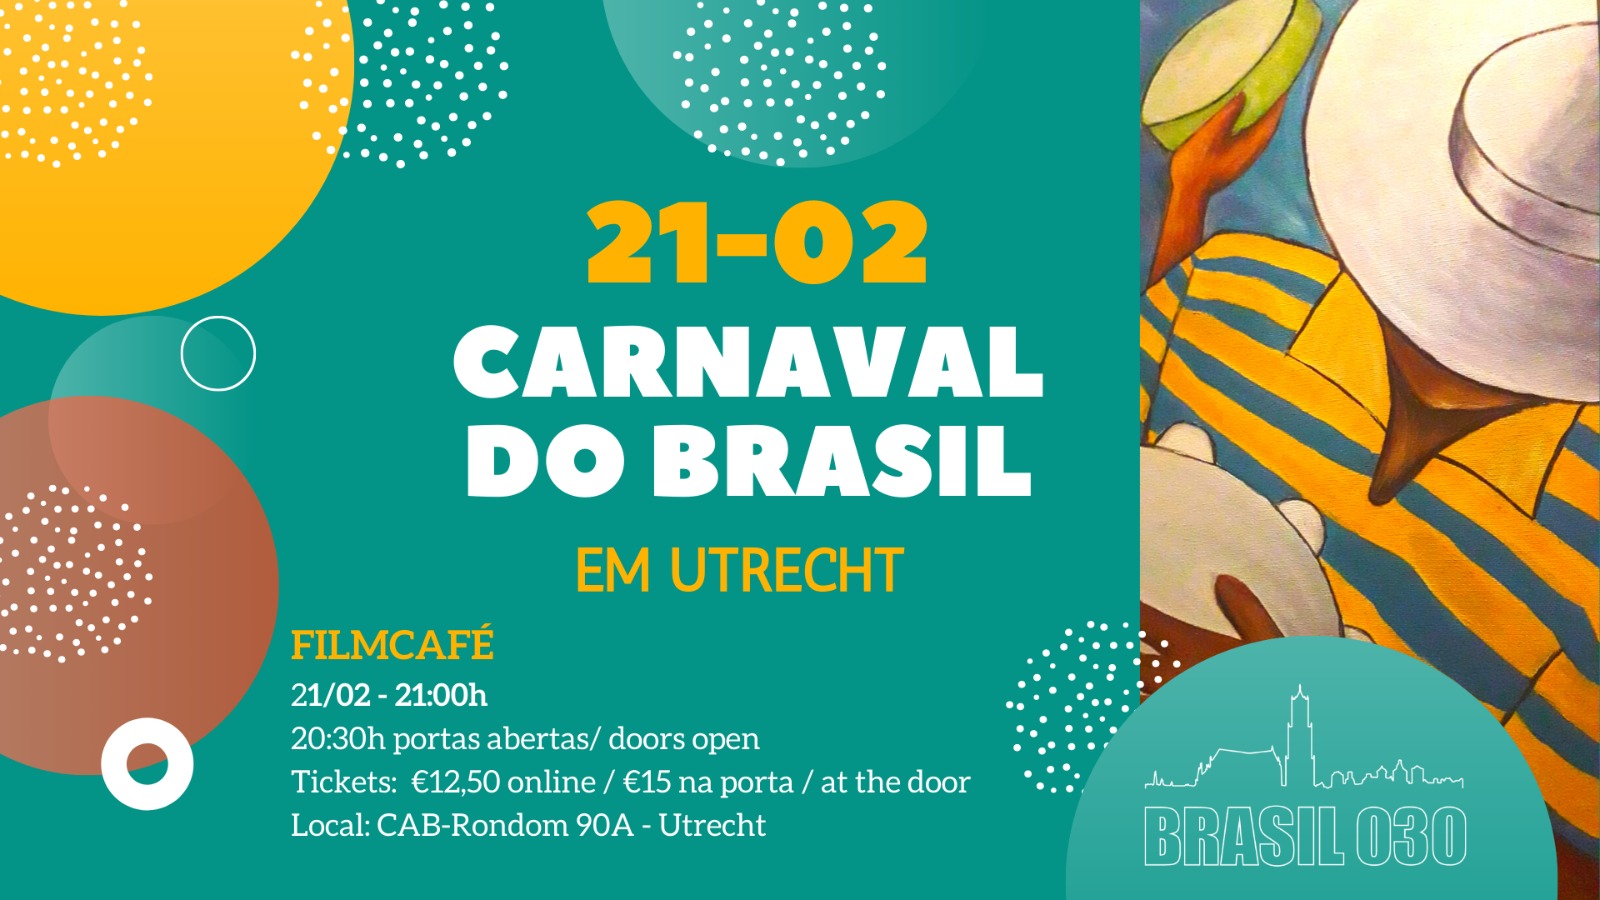 Ticket kopen voor evenement Brazilian Carnival - Carnaval do Brasil em Utrecht